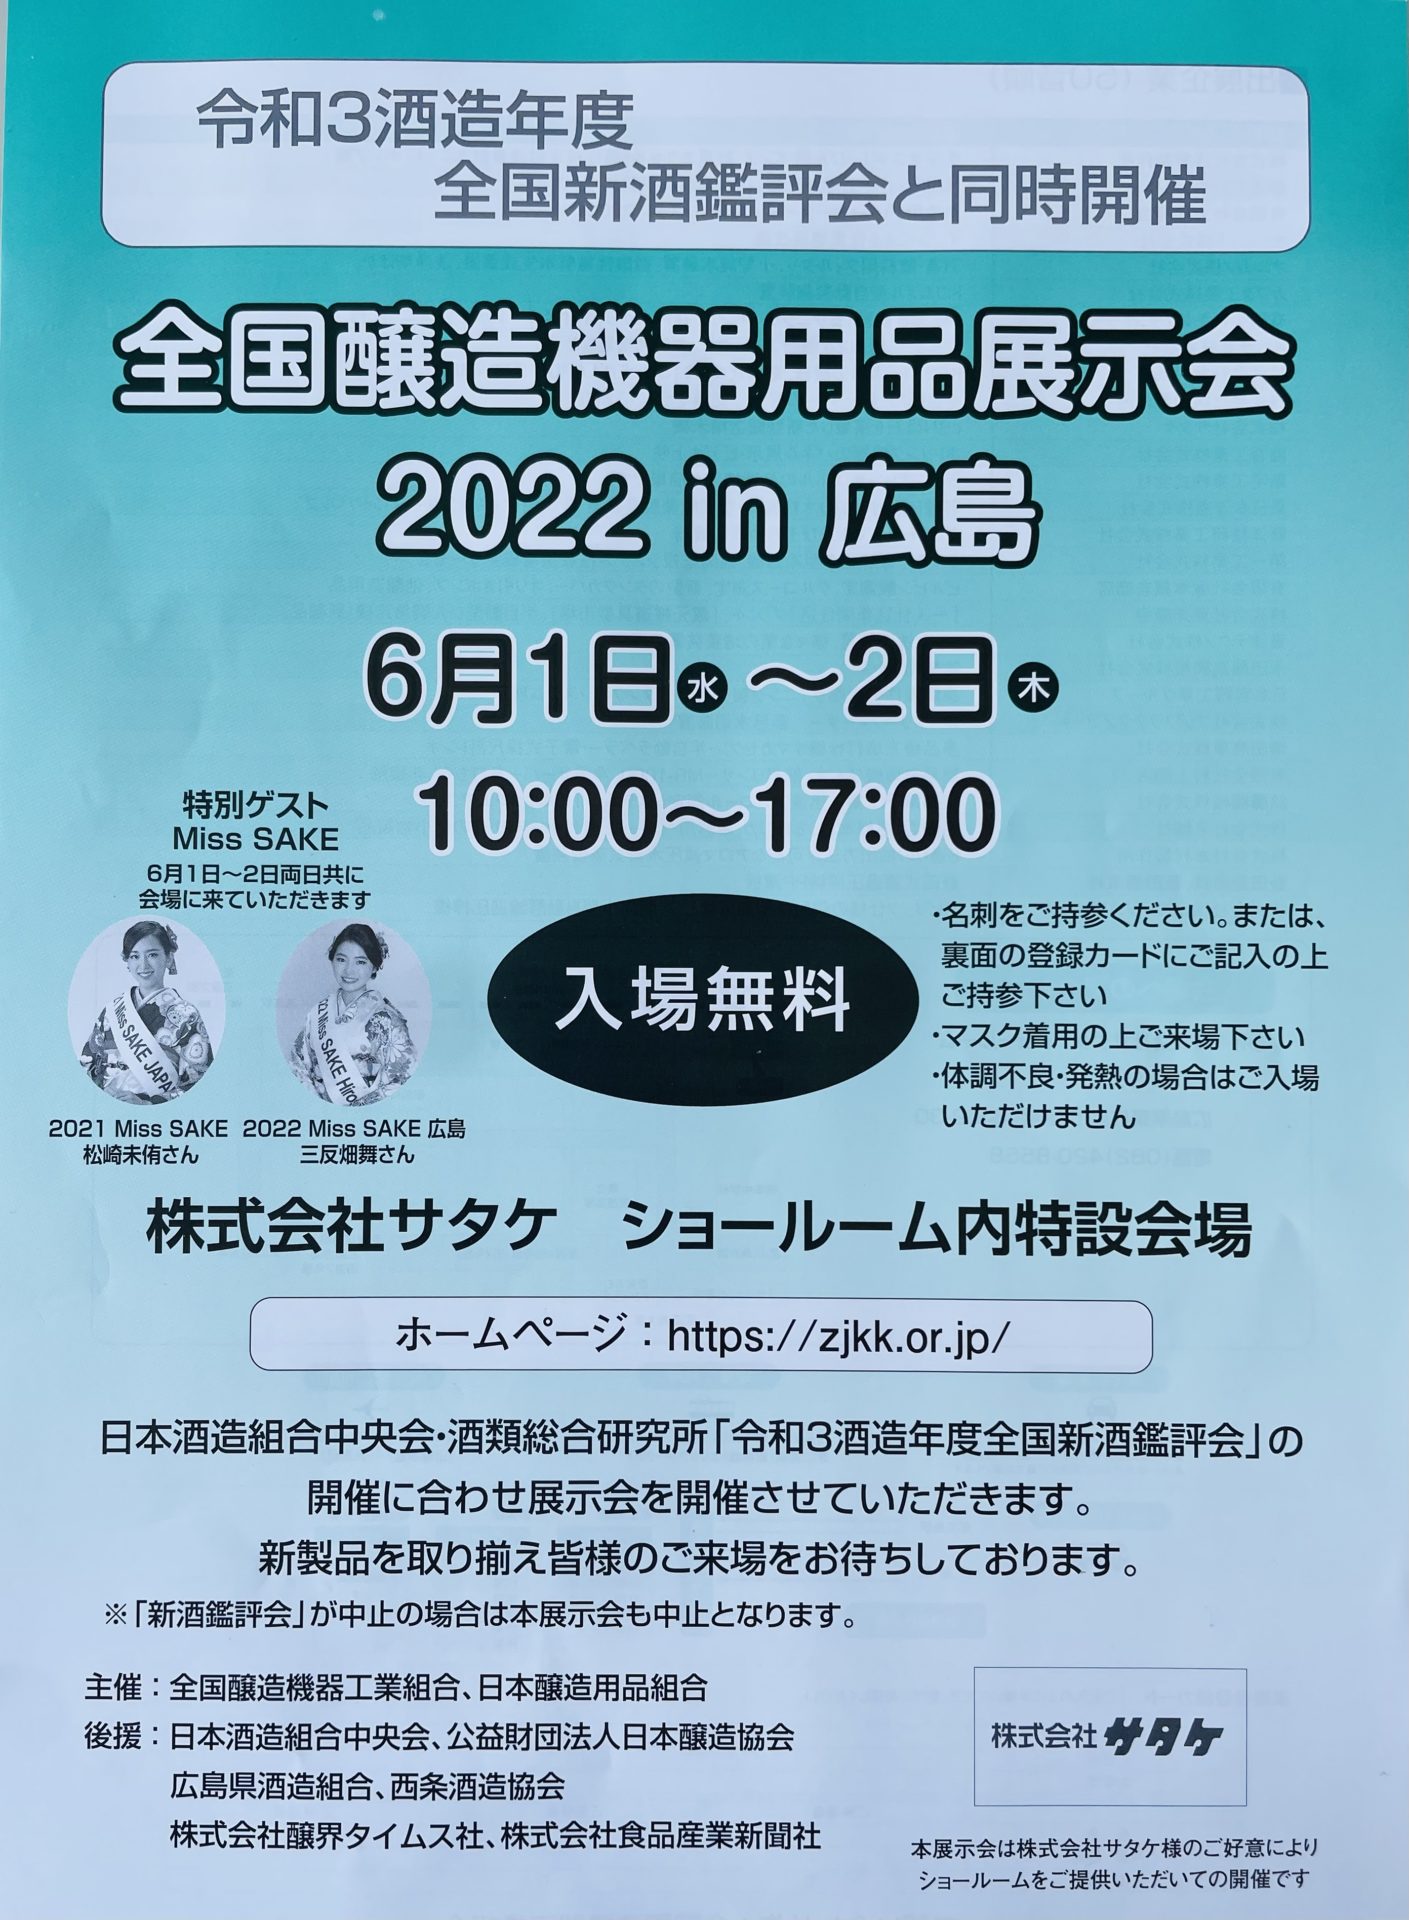 全国醸造機器用品展示会 2020 in 広島に出展します